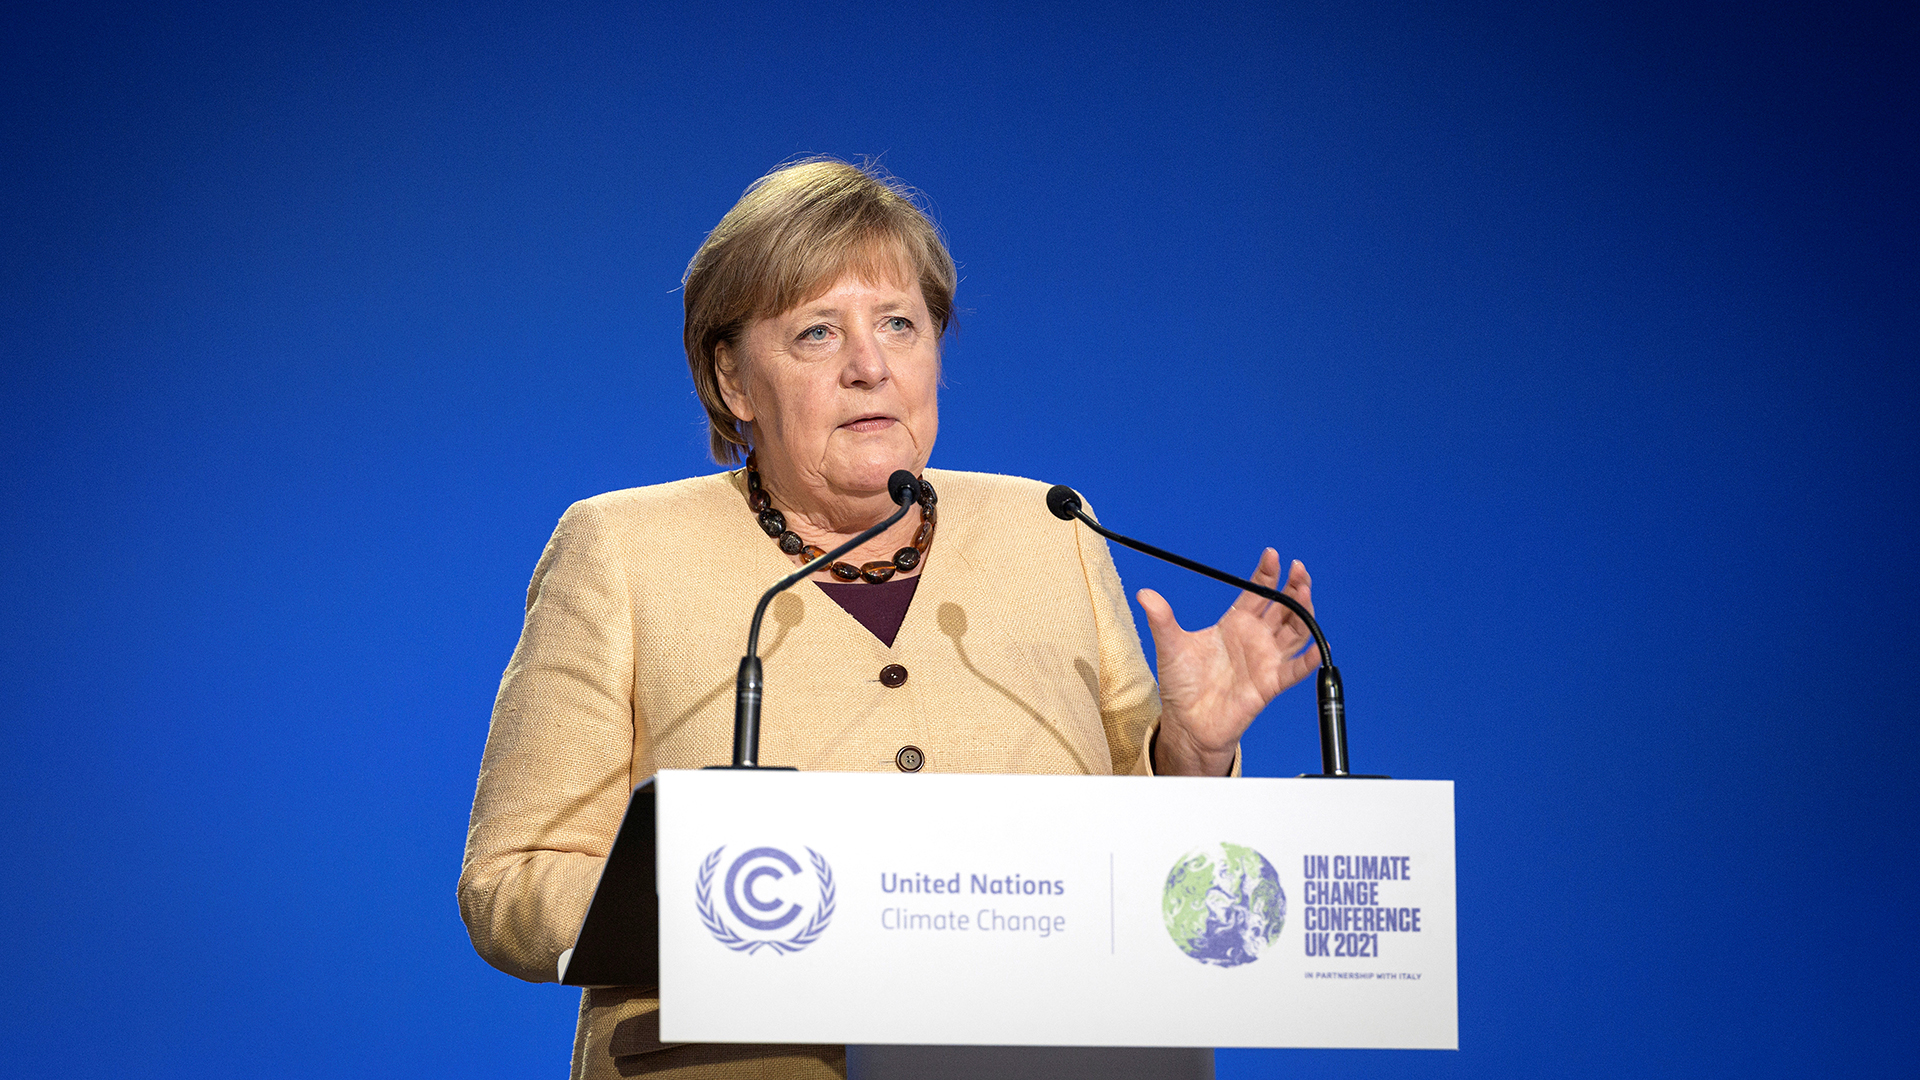 Bundeskanzlerin Angela Merkel spricht während der UN-Klimakonferenz in Glasgow, Schottland.  | via REUTERS